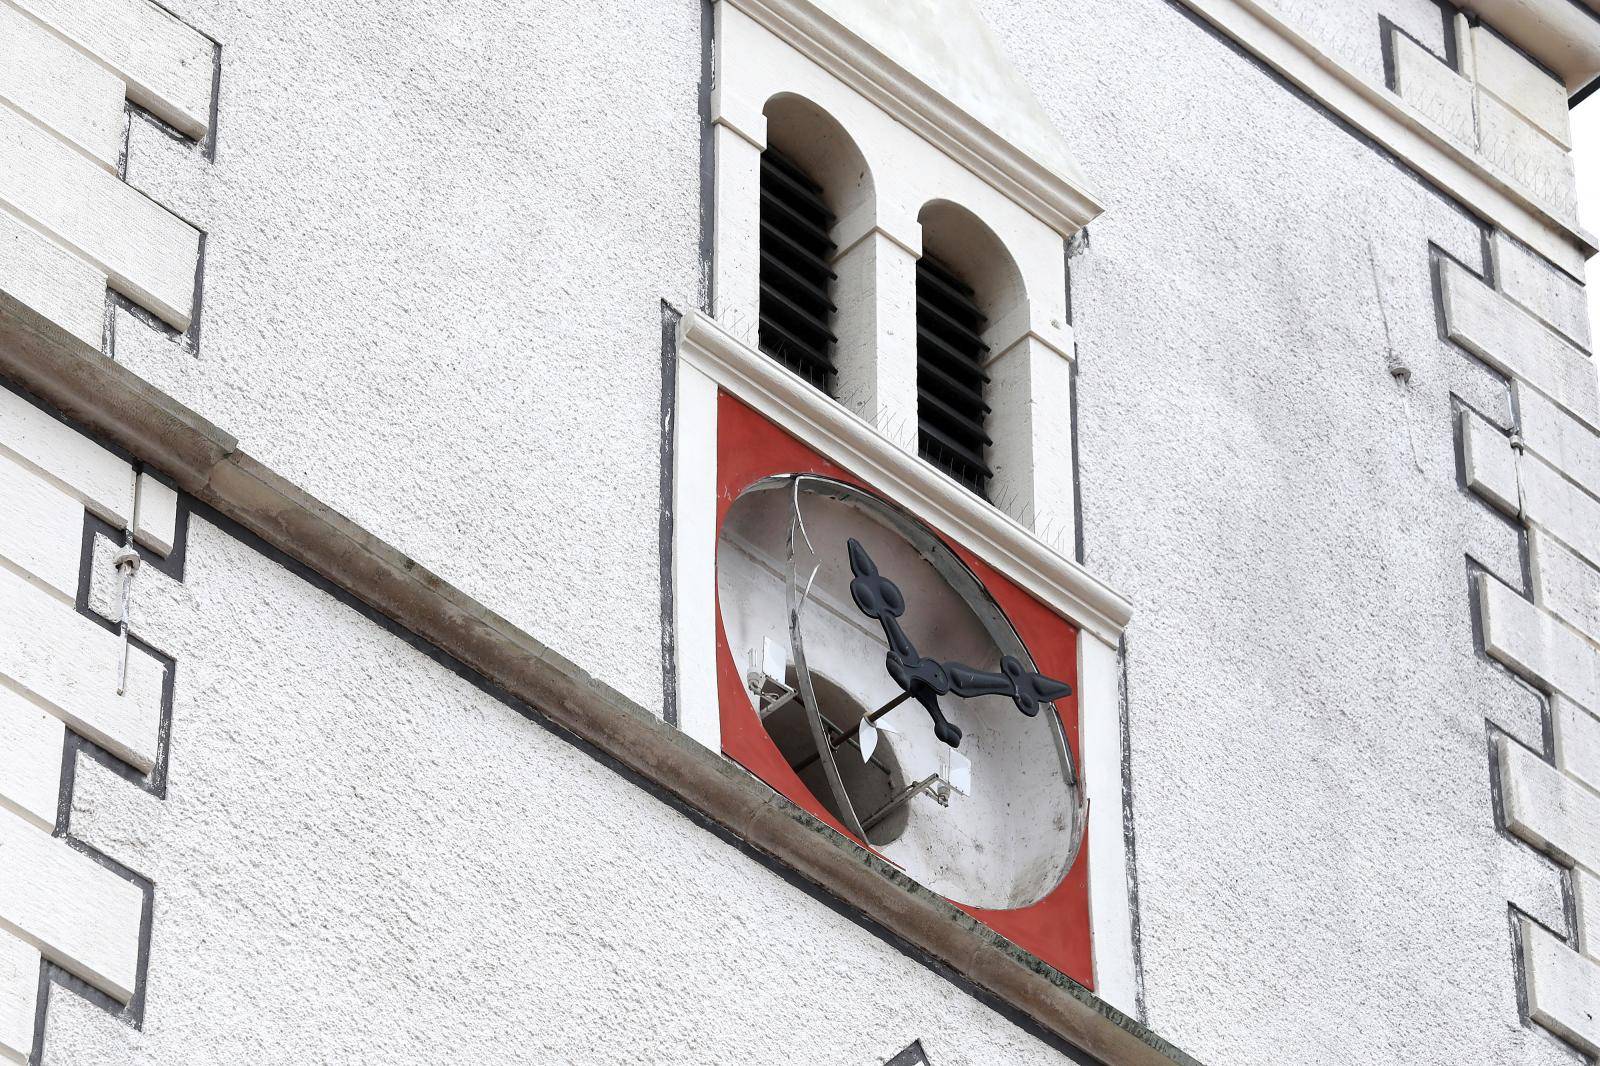 Zagreb: Olujno nevrijeme oÅ¡tetilo i sat na tornju crkve Svetog Marka